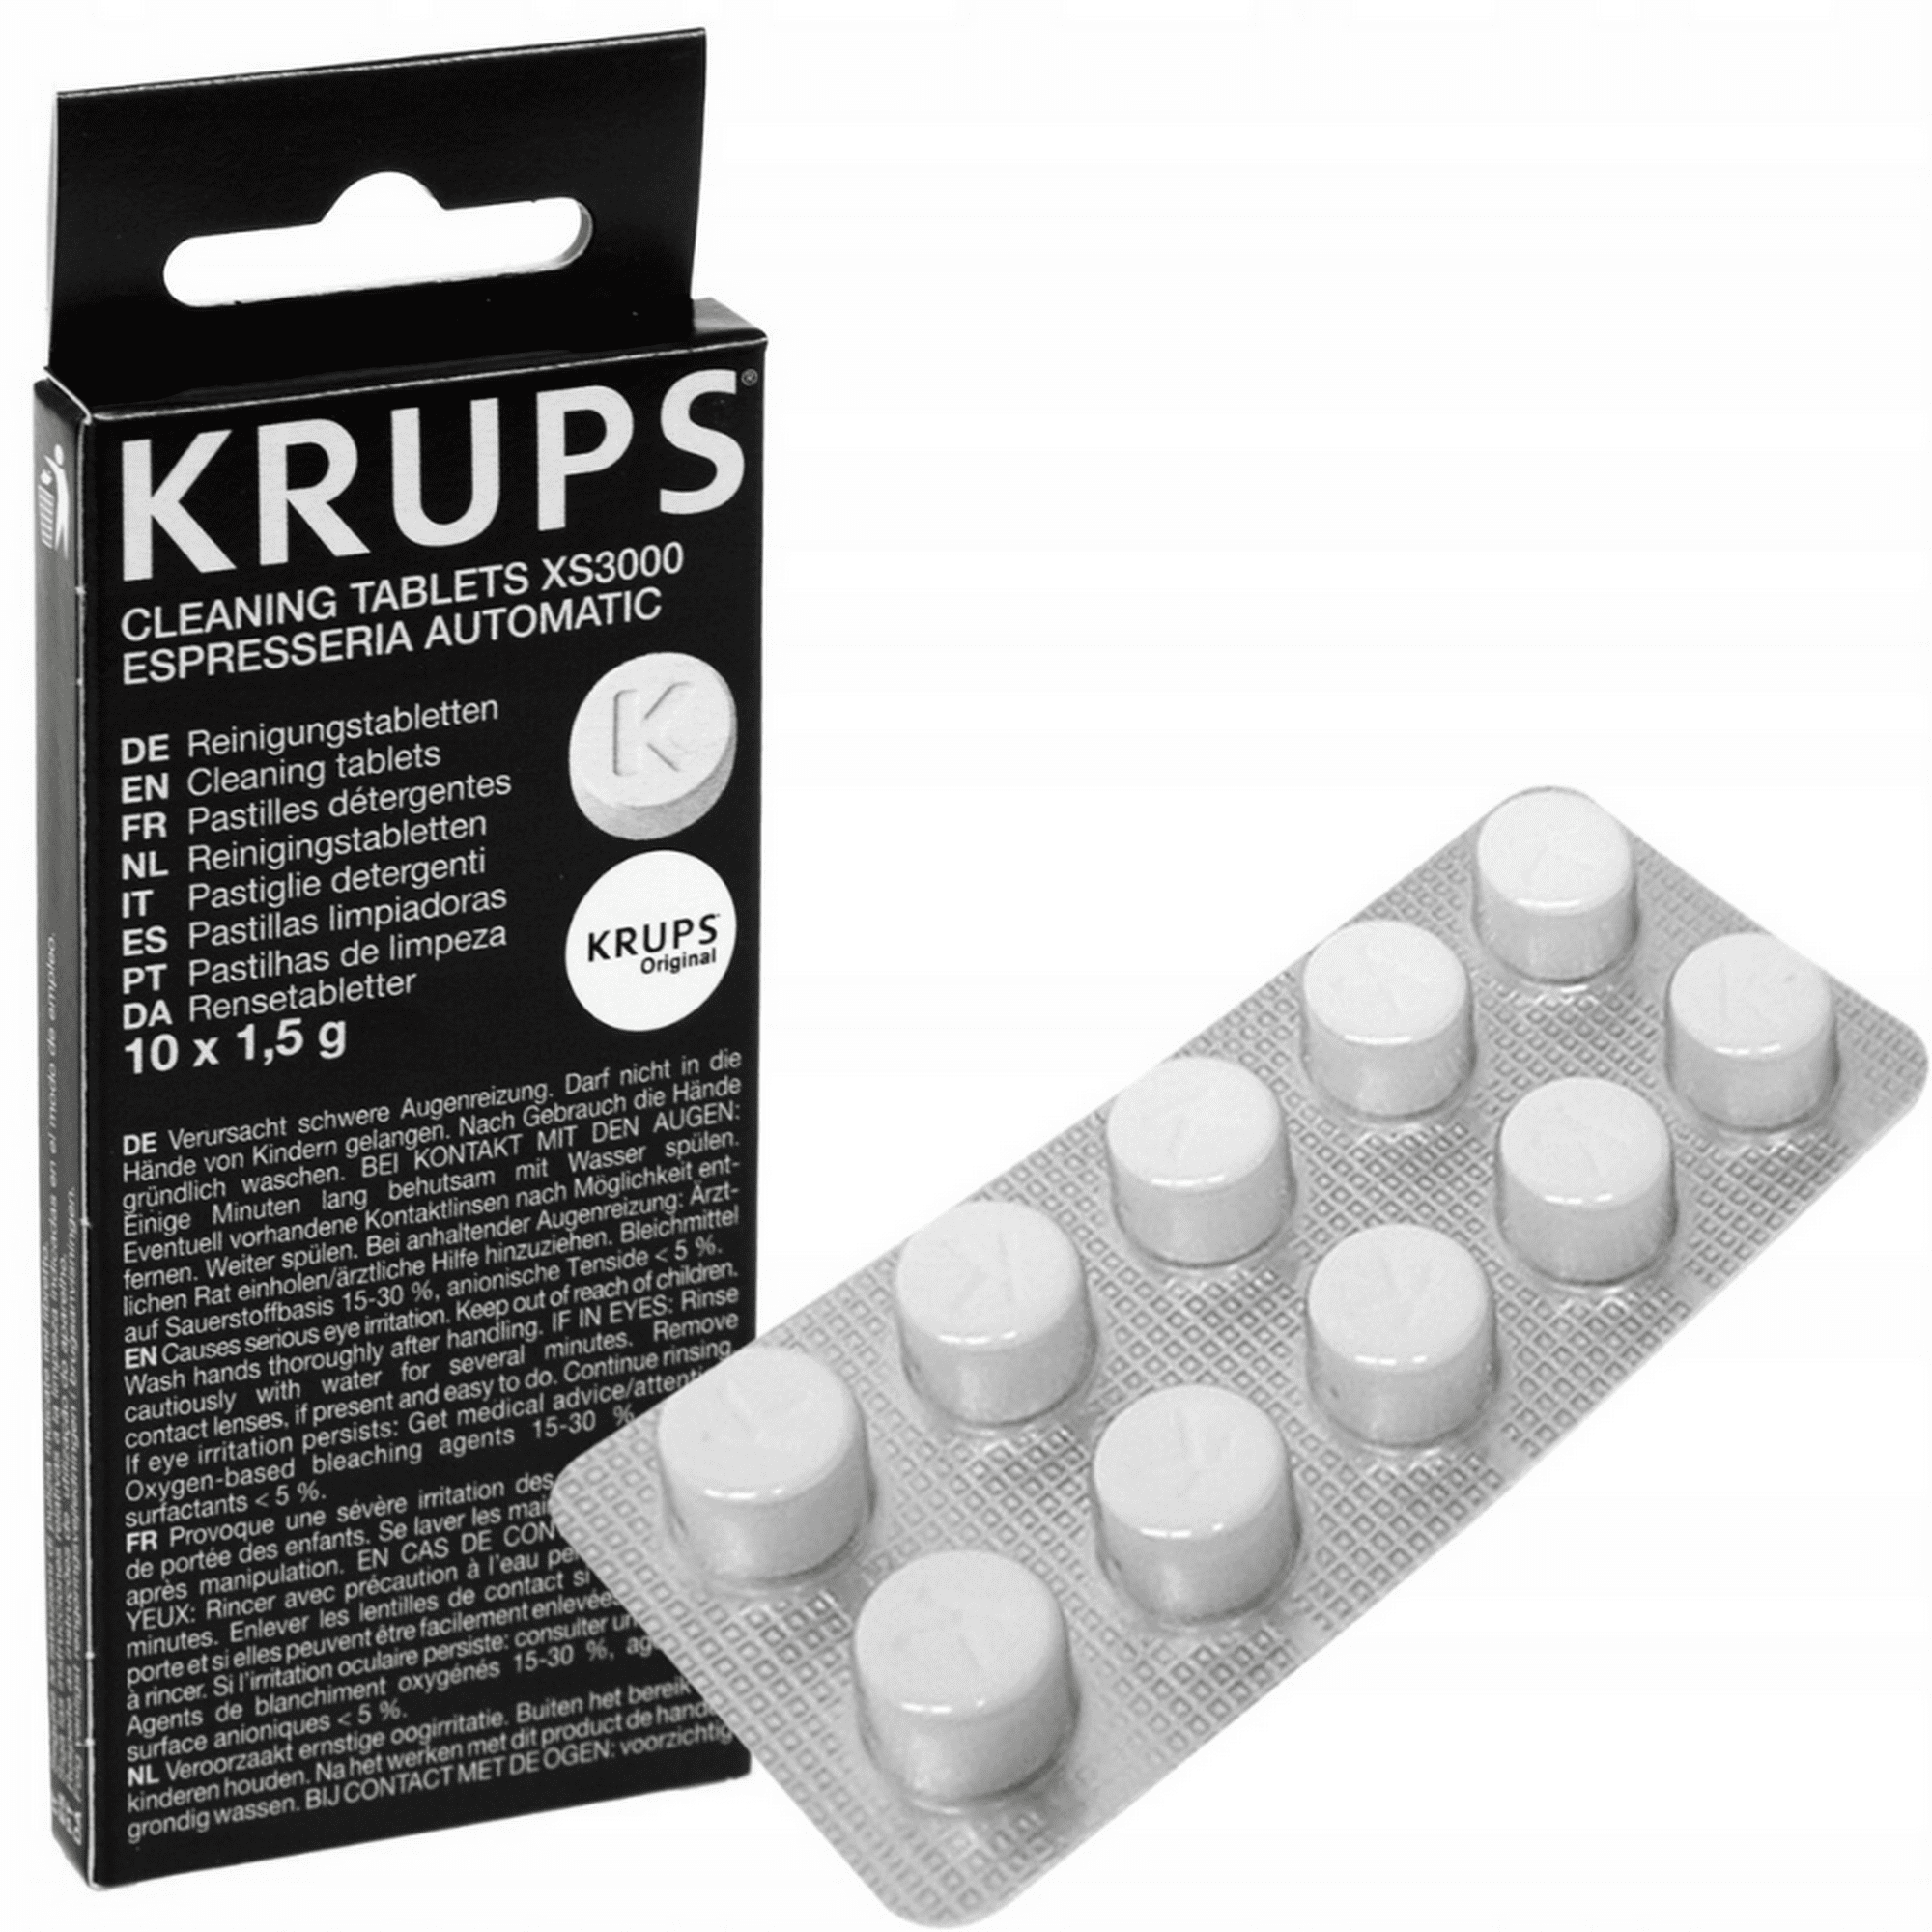 Donde colocó la pastilla para limpiar mi cafetera 🤔🤔 #krups